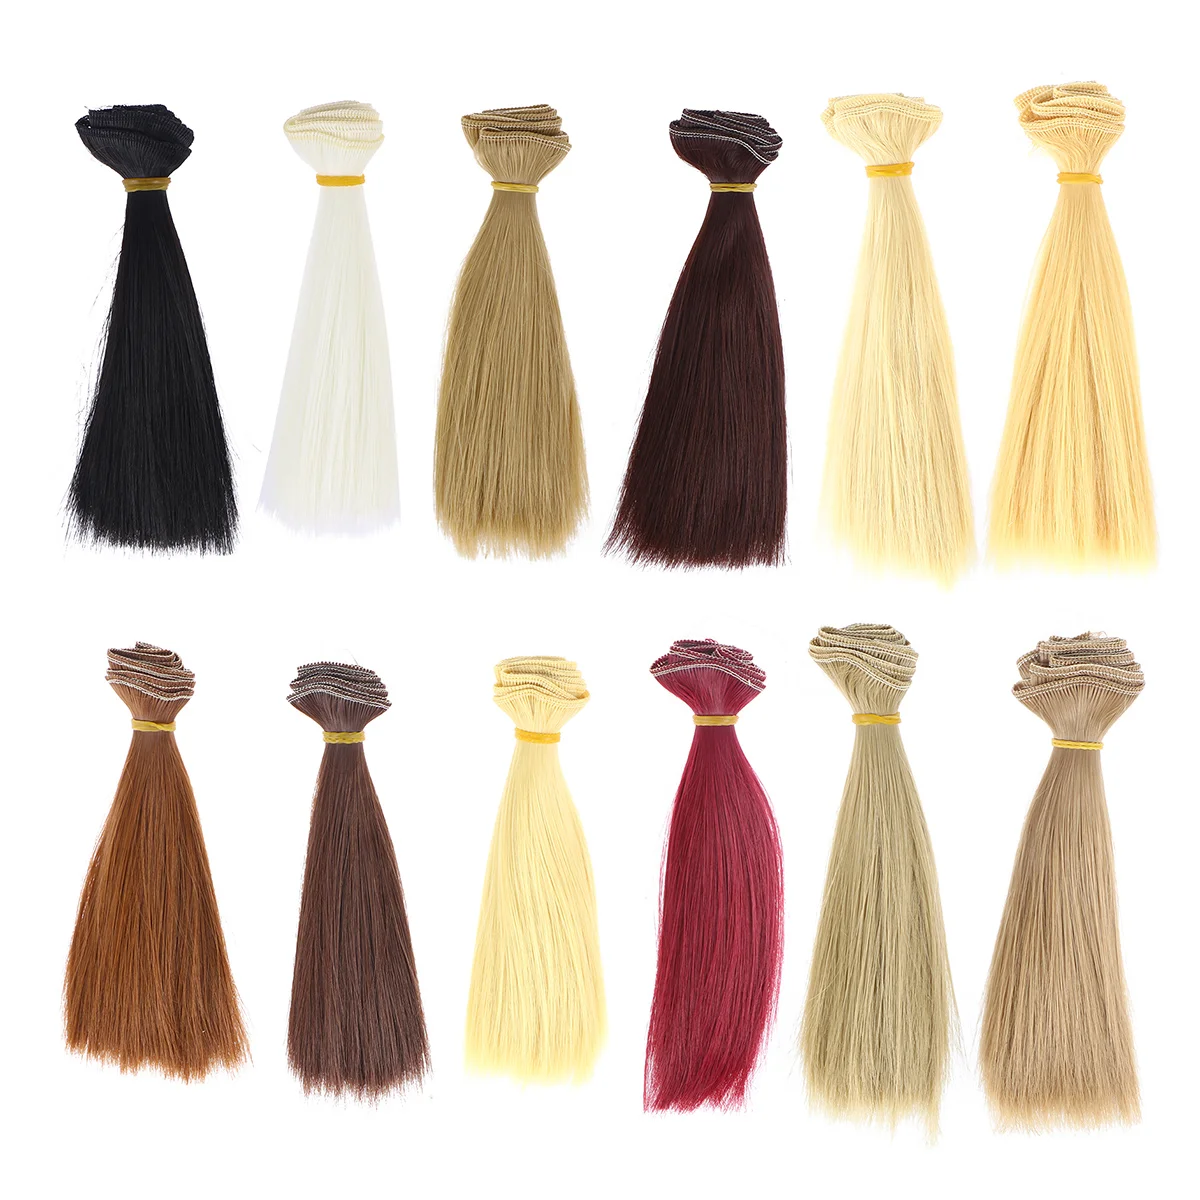 

Синтетические длинные прямые волосы для наращивания термостойкие волосы «сделай сам» Искусственные парики материал для волос 12 шт. 15 см треусы для кукол